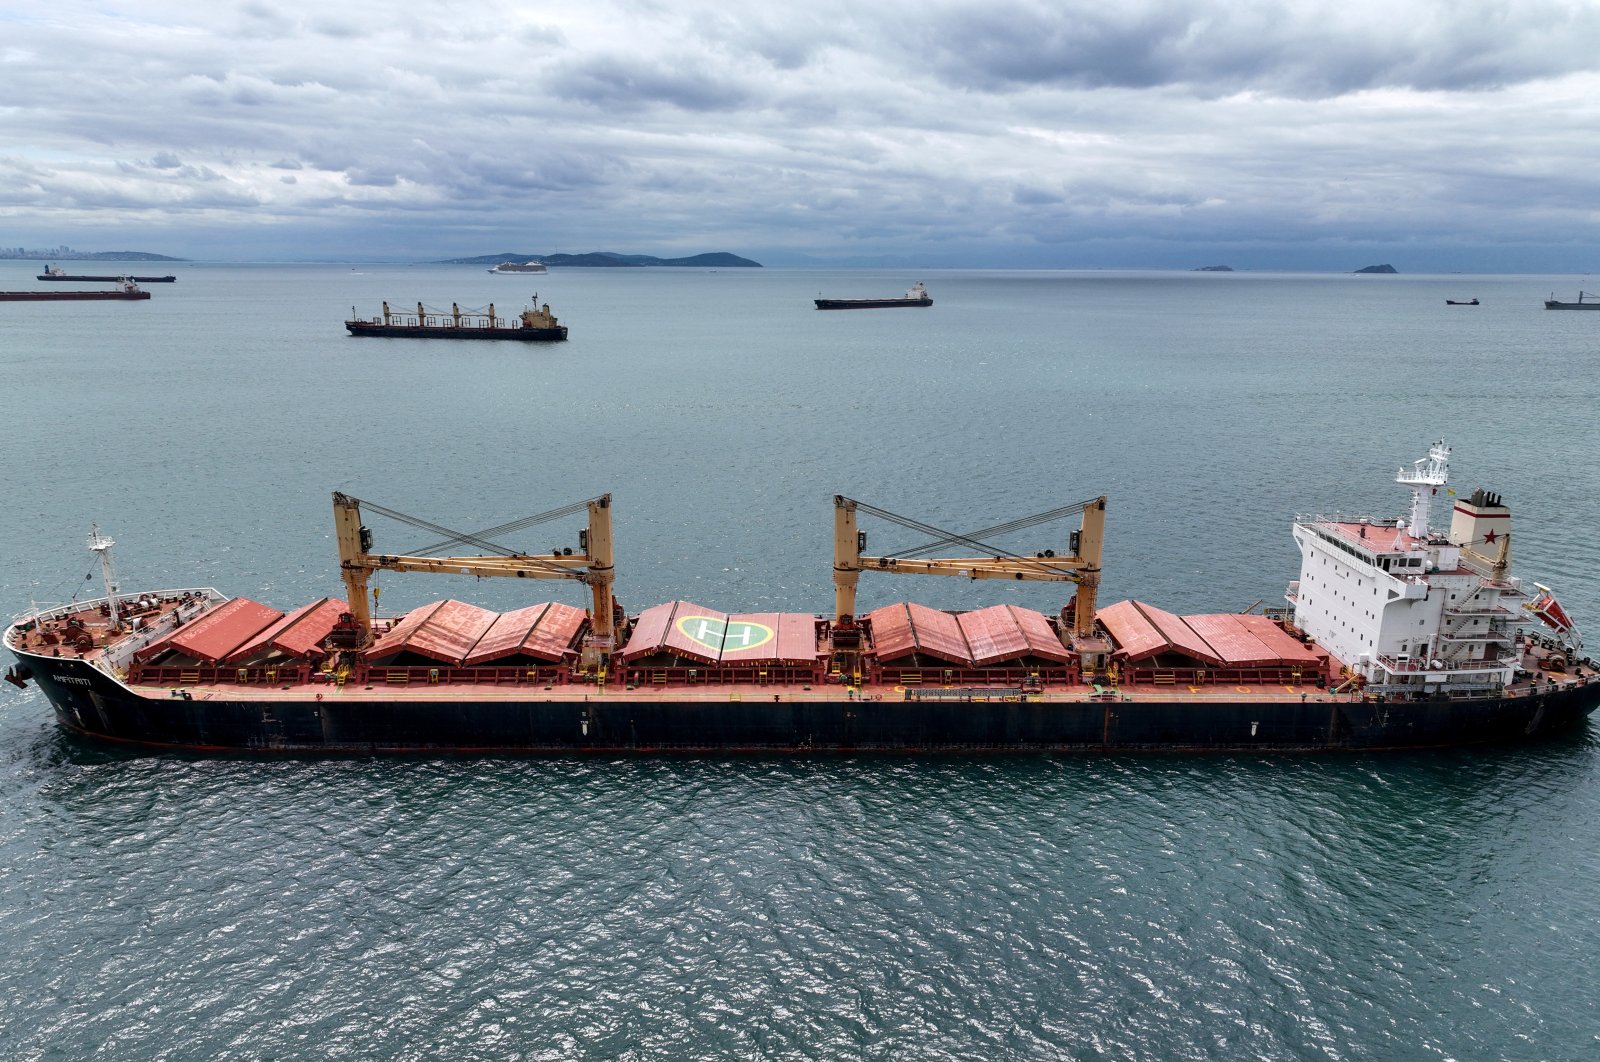 Pihak yang lebih dekat untuk menyetujui perpanjangan kesepakatan biji-bijian Laut Hitam: Türkiye